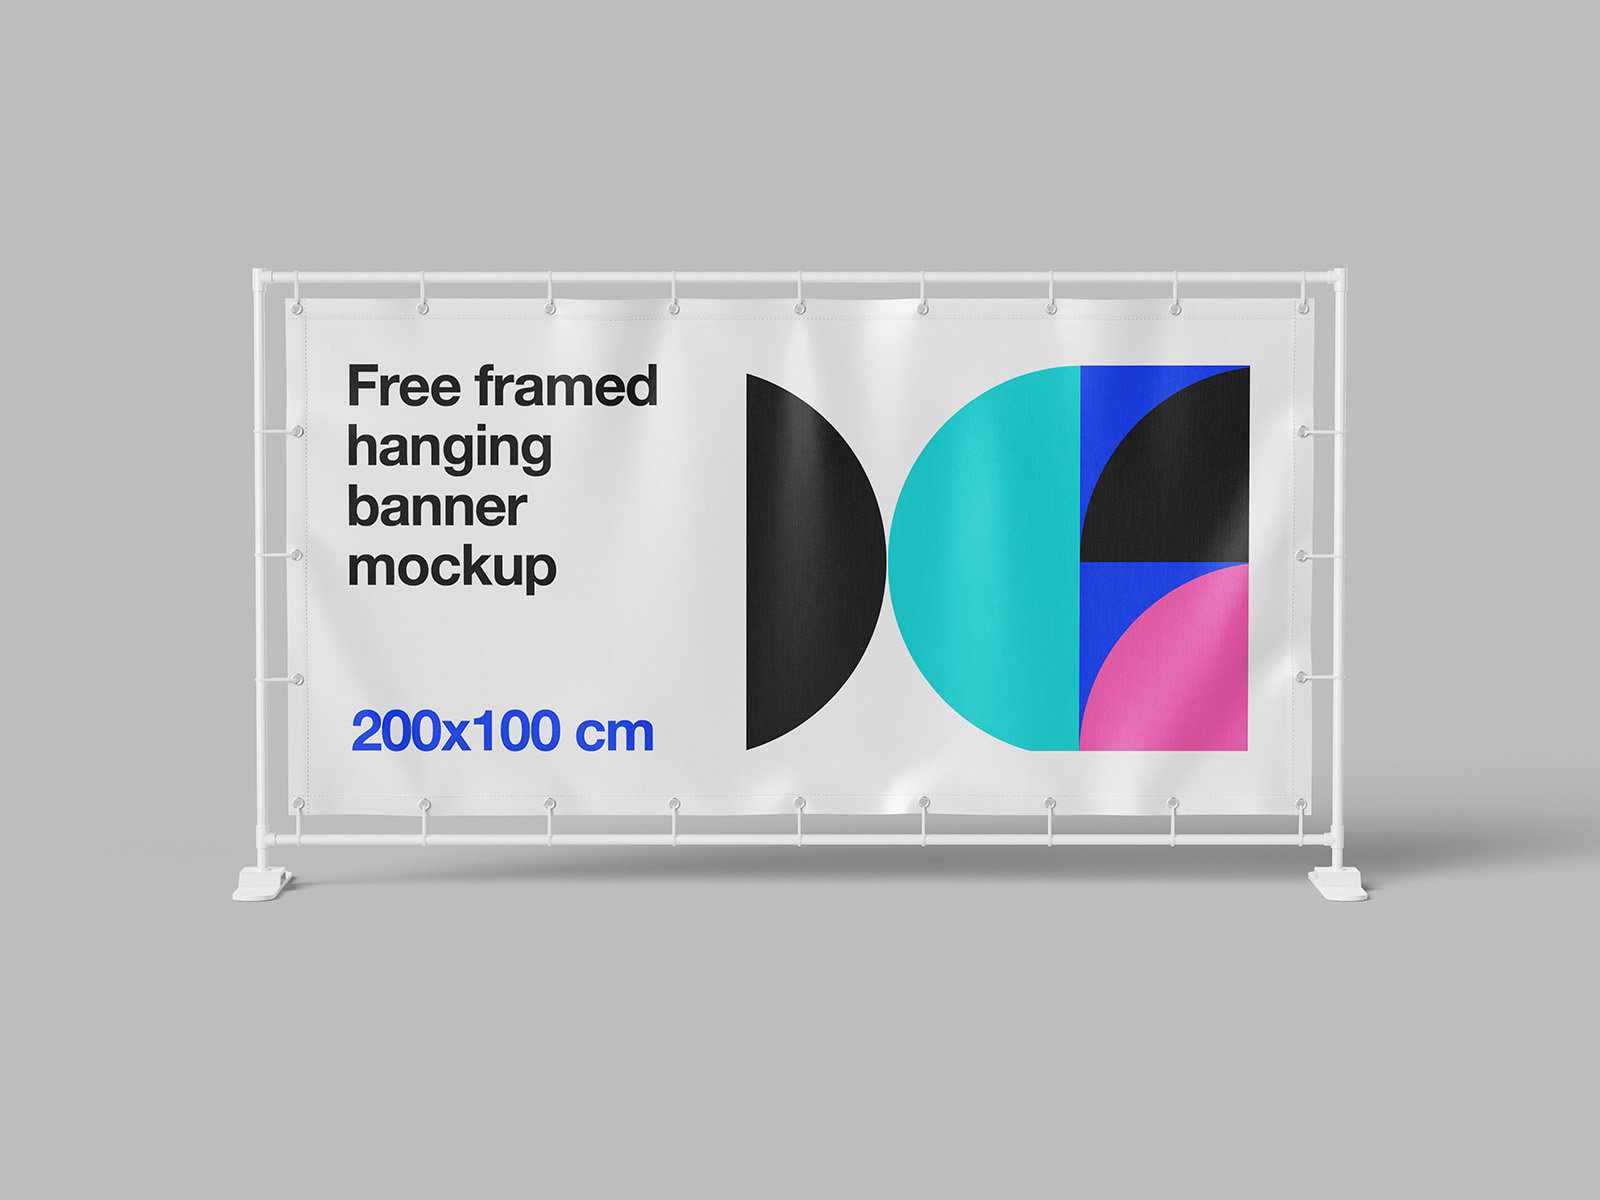 4 Sights of Framed Hanging Banner Mockup FREE PSD